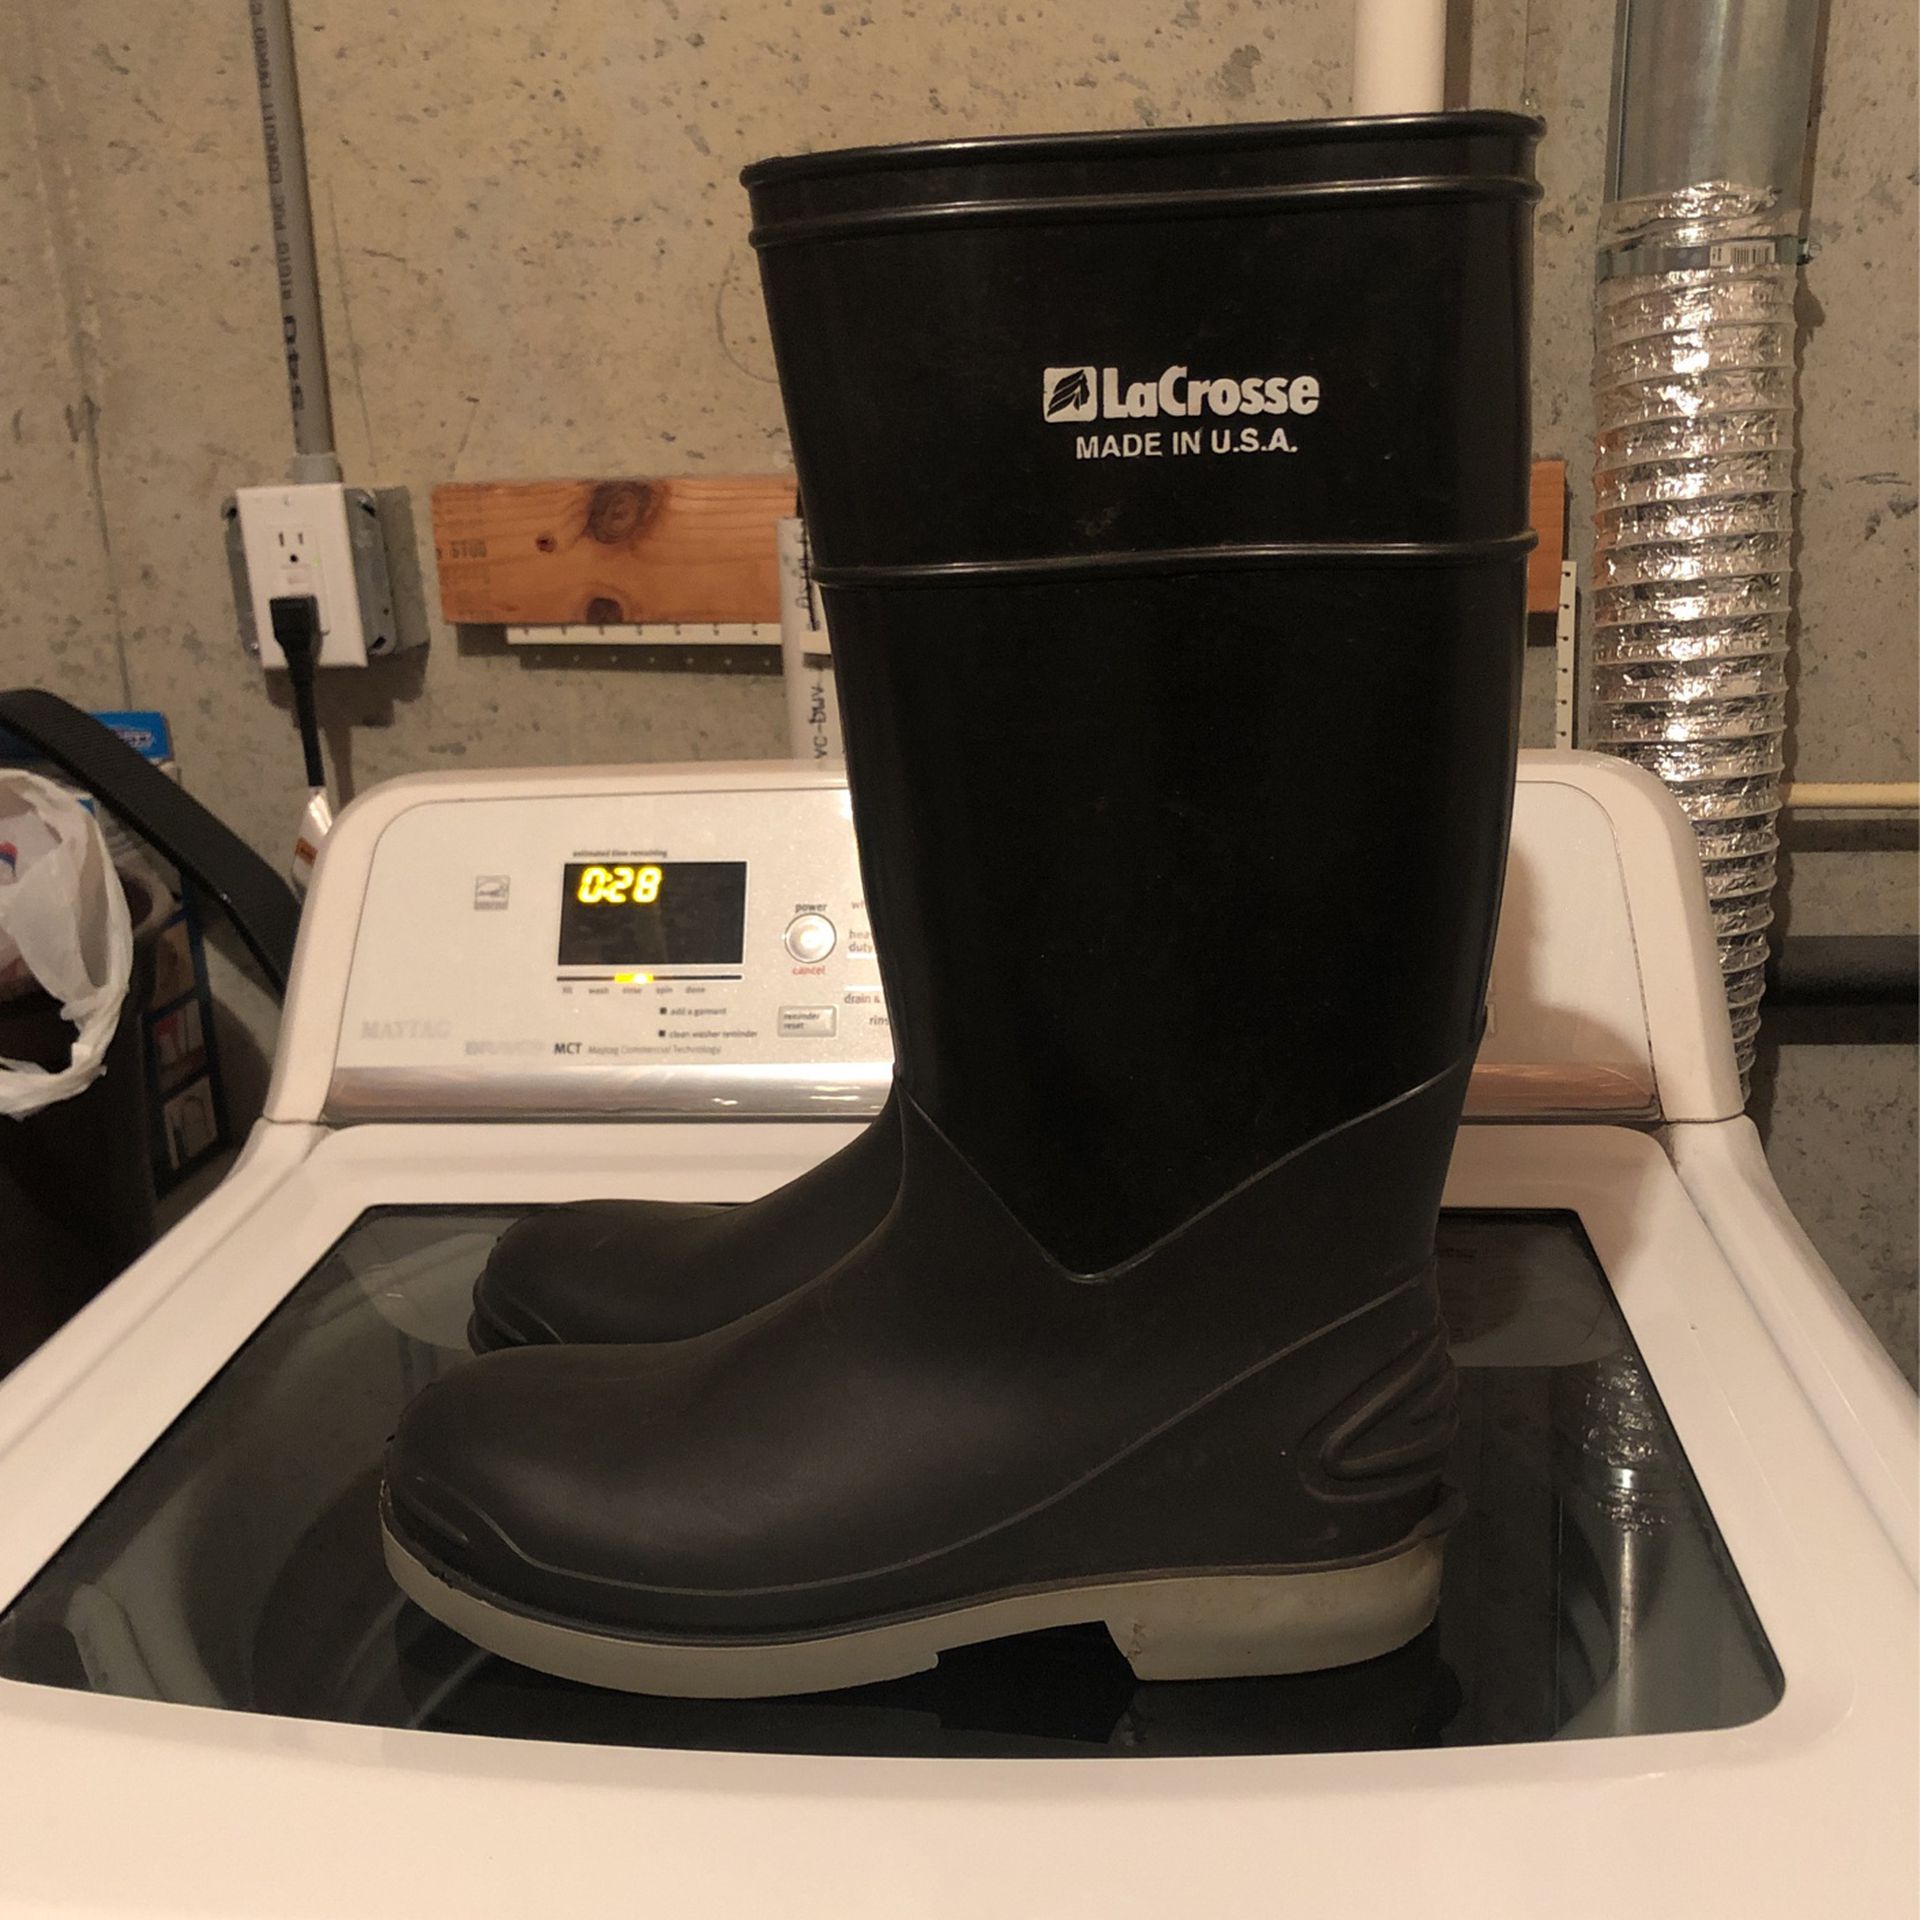 Size 10 Rain Boots